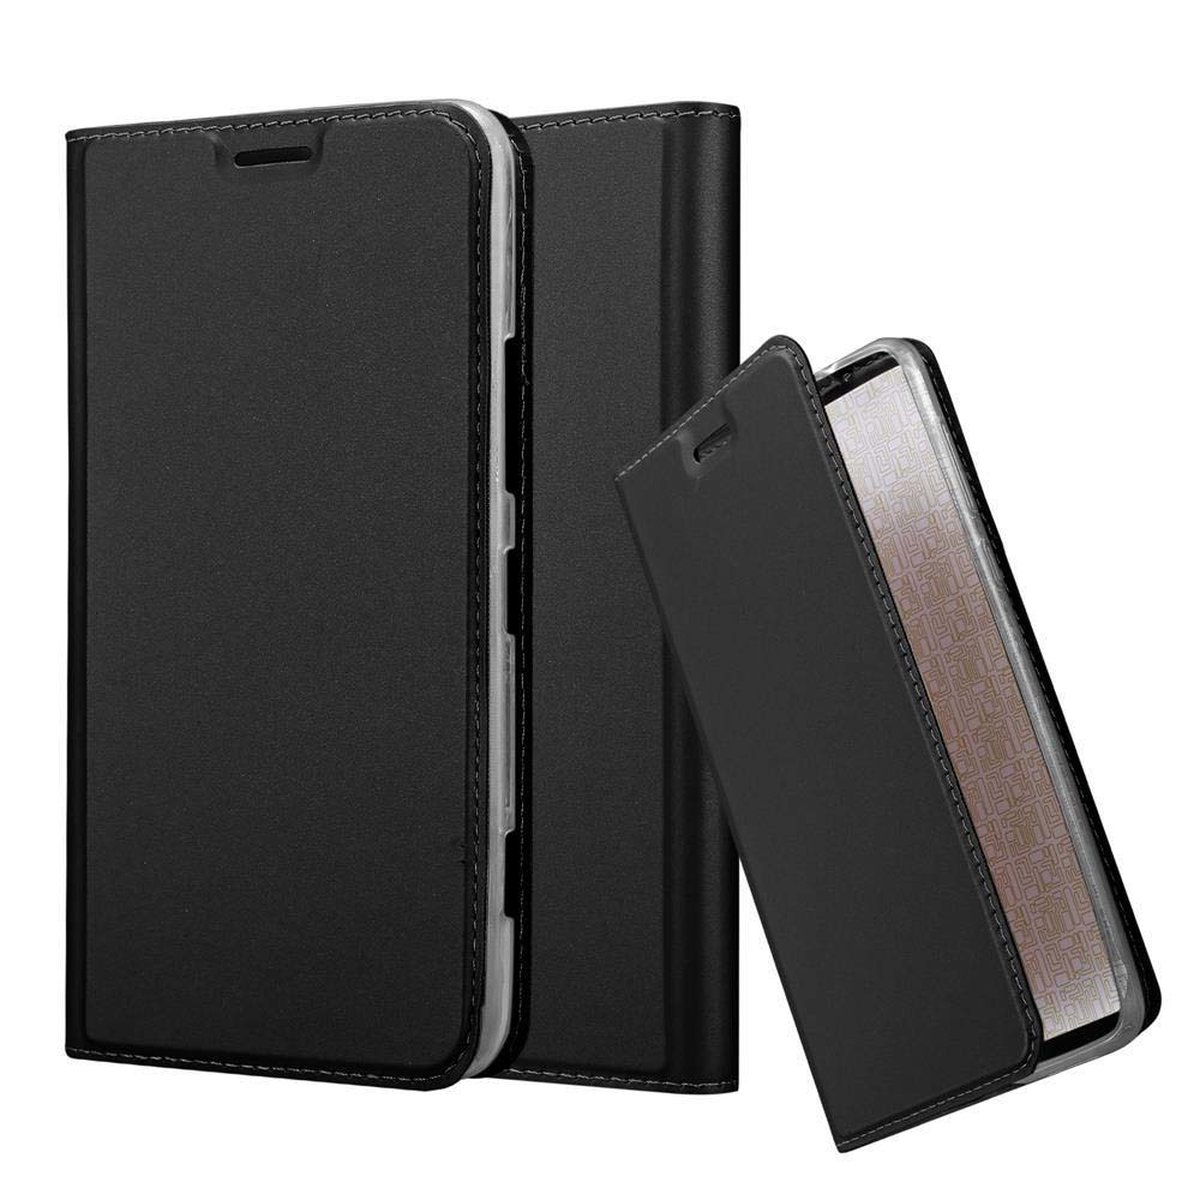 CLASSY CADORABO SCHWARZ 1320, Nokia, Handyhülle Book Lumia Classy Style, Bookcover,